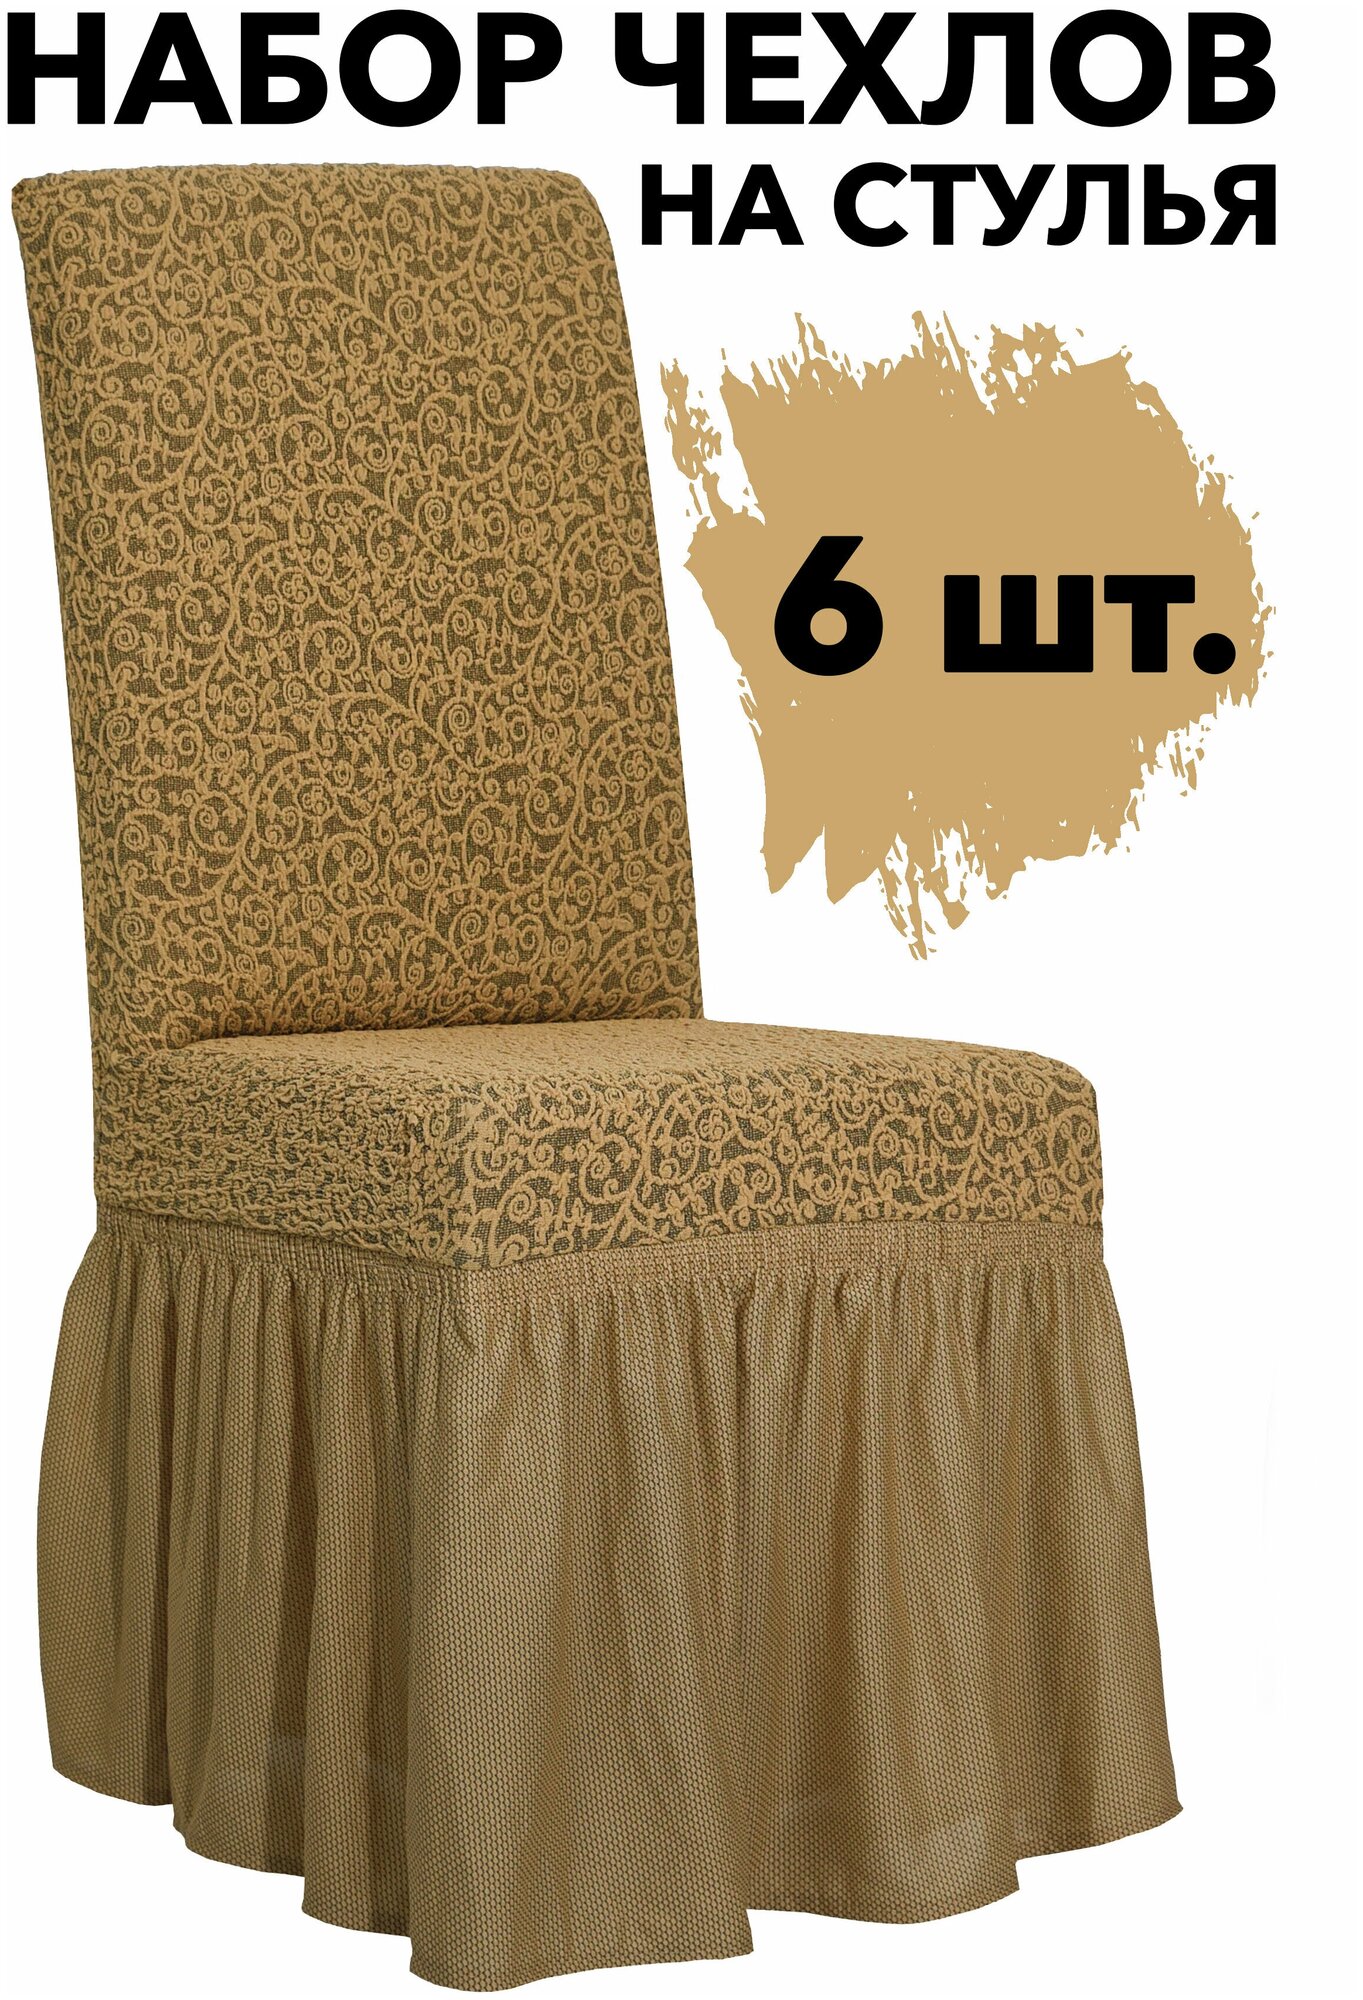 Набор чехлов на стулья со спинкой 6 шт на кухню универсальные с оборкой Venera, цвет Медовый